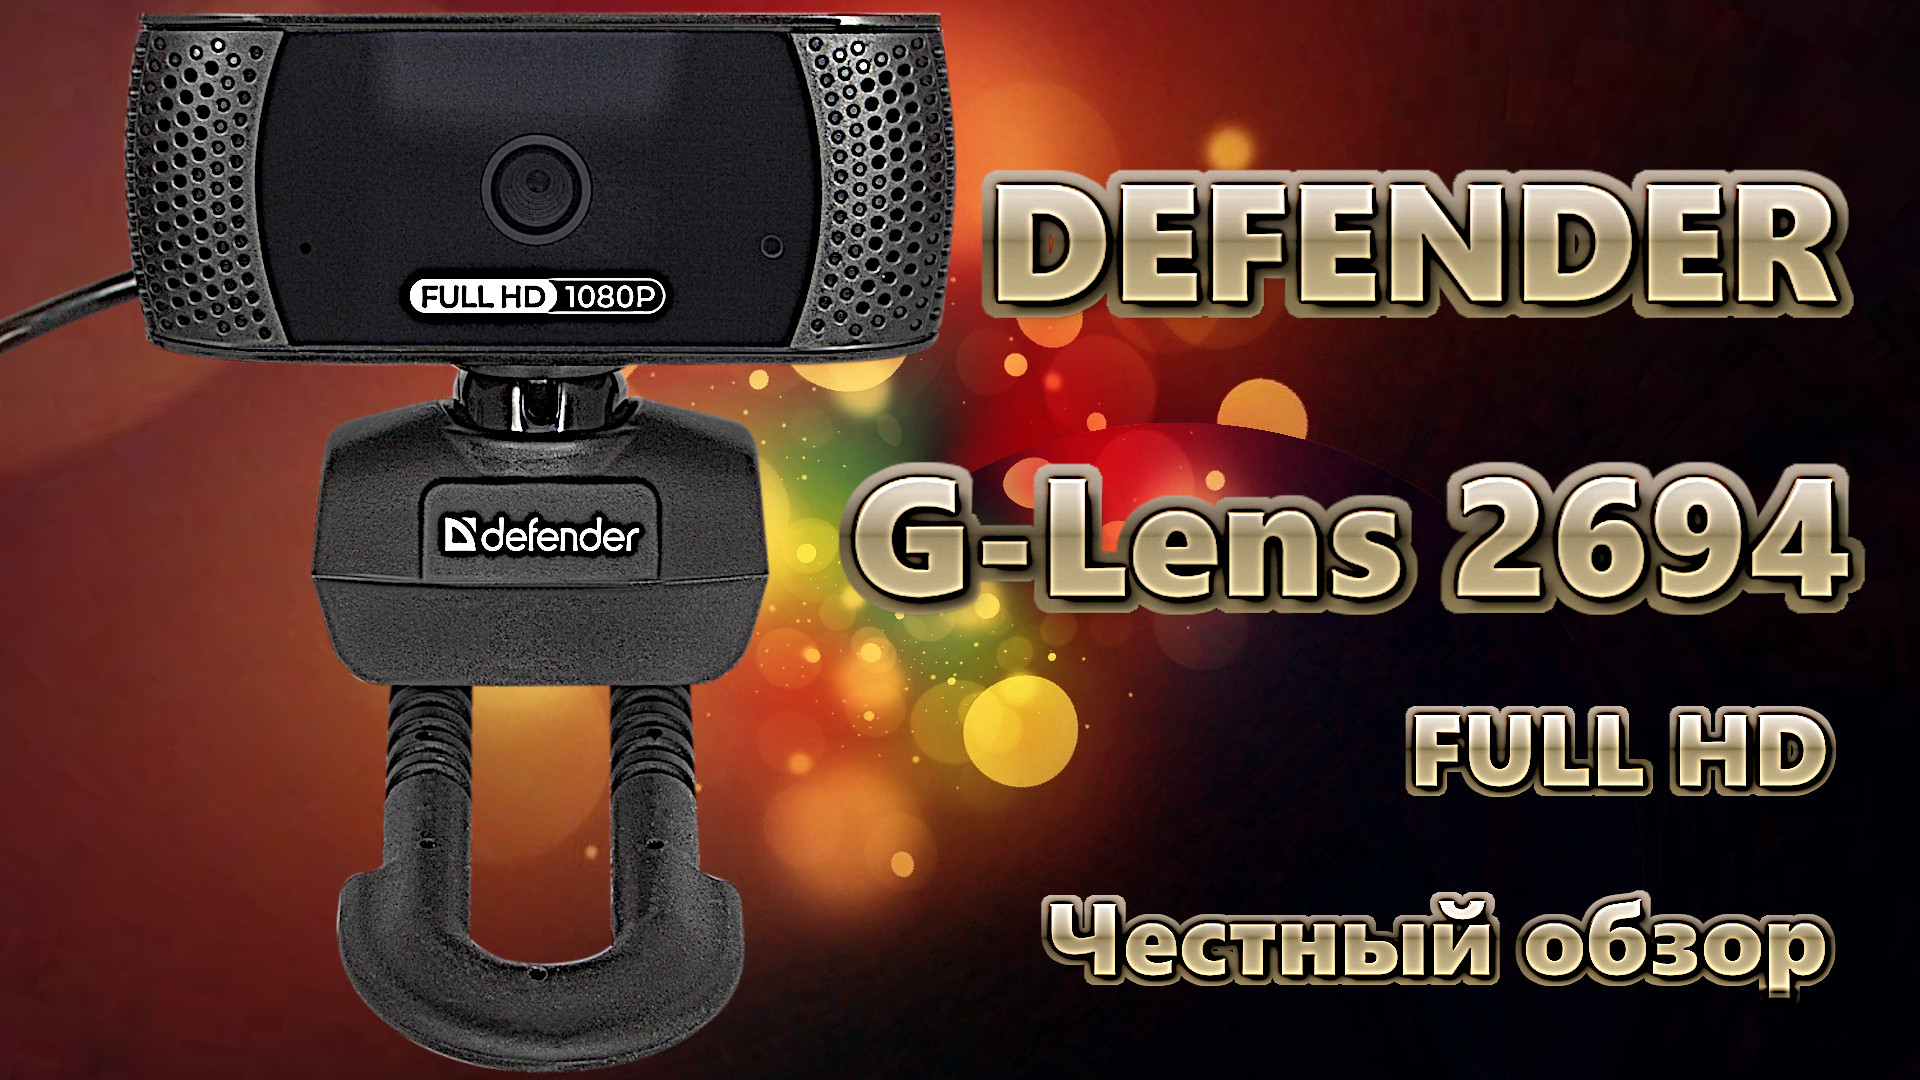 Обзор веб-камеры Defender G-Lens 2694 Full HD